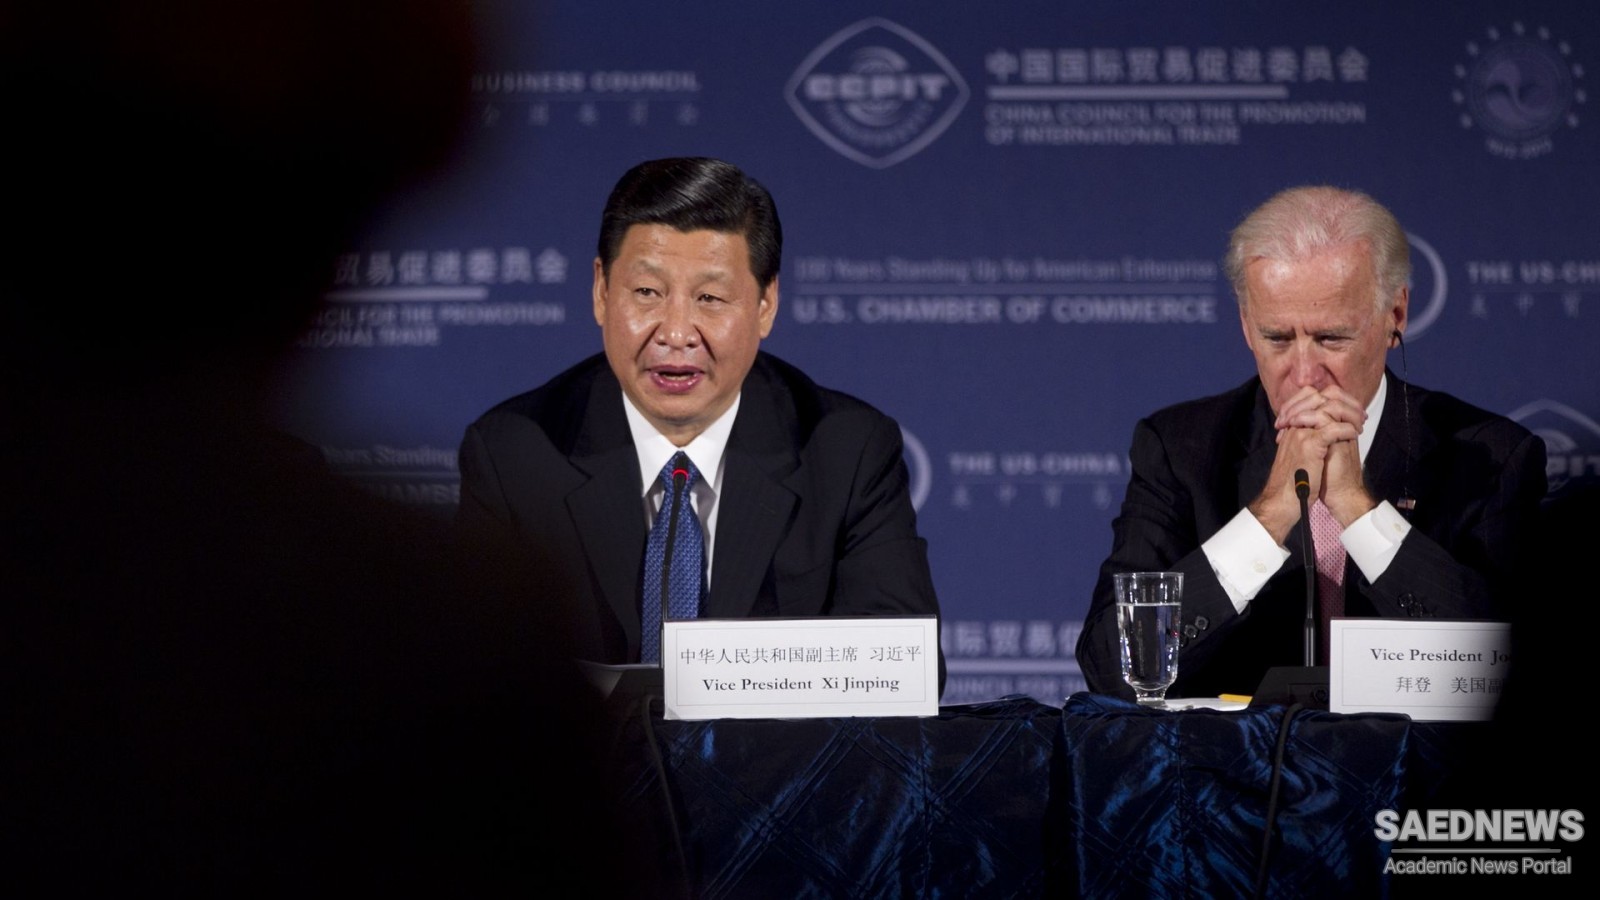 बिडेन ने चीनी मानवाधिकार और व्यापार नीतियों को अपनी पहली कॉल में शी को चुनौती दी